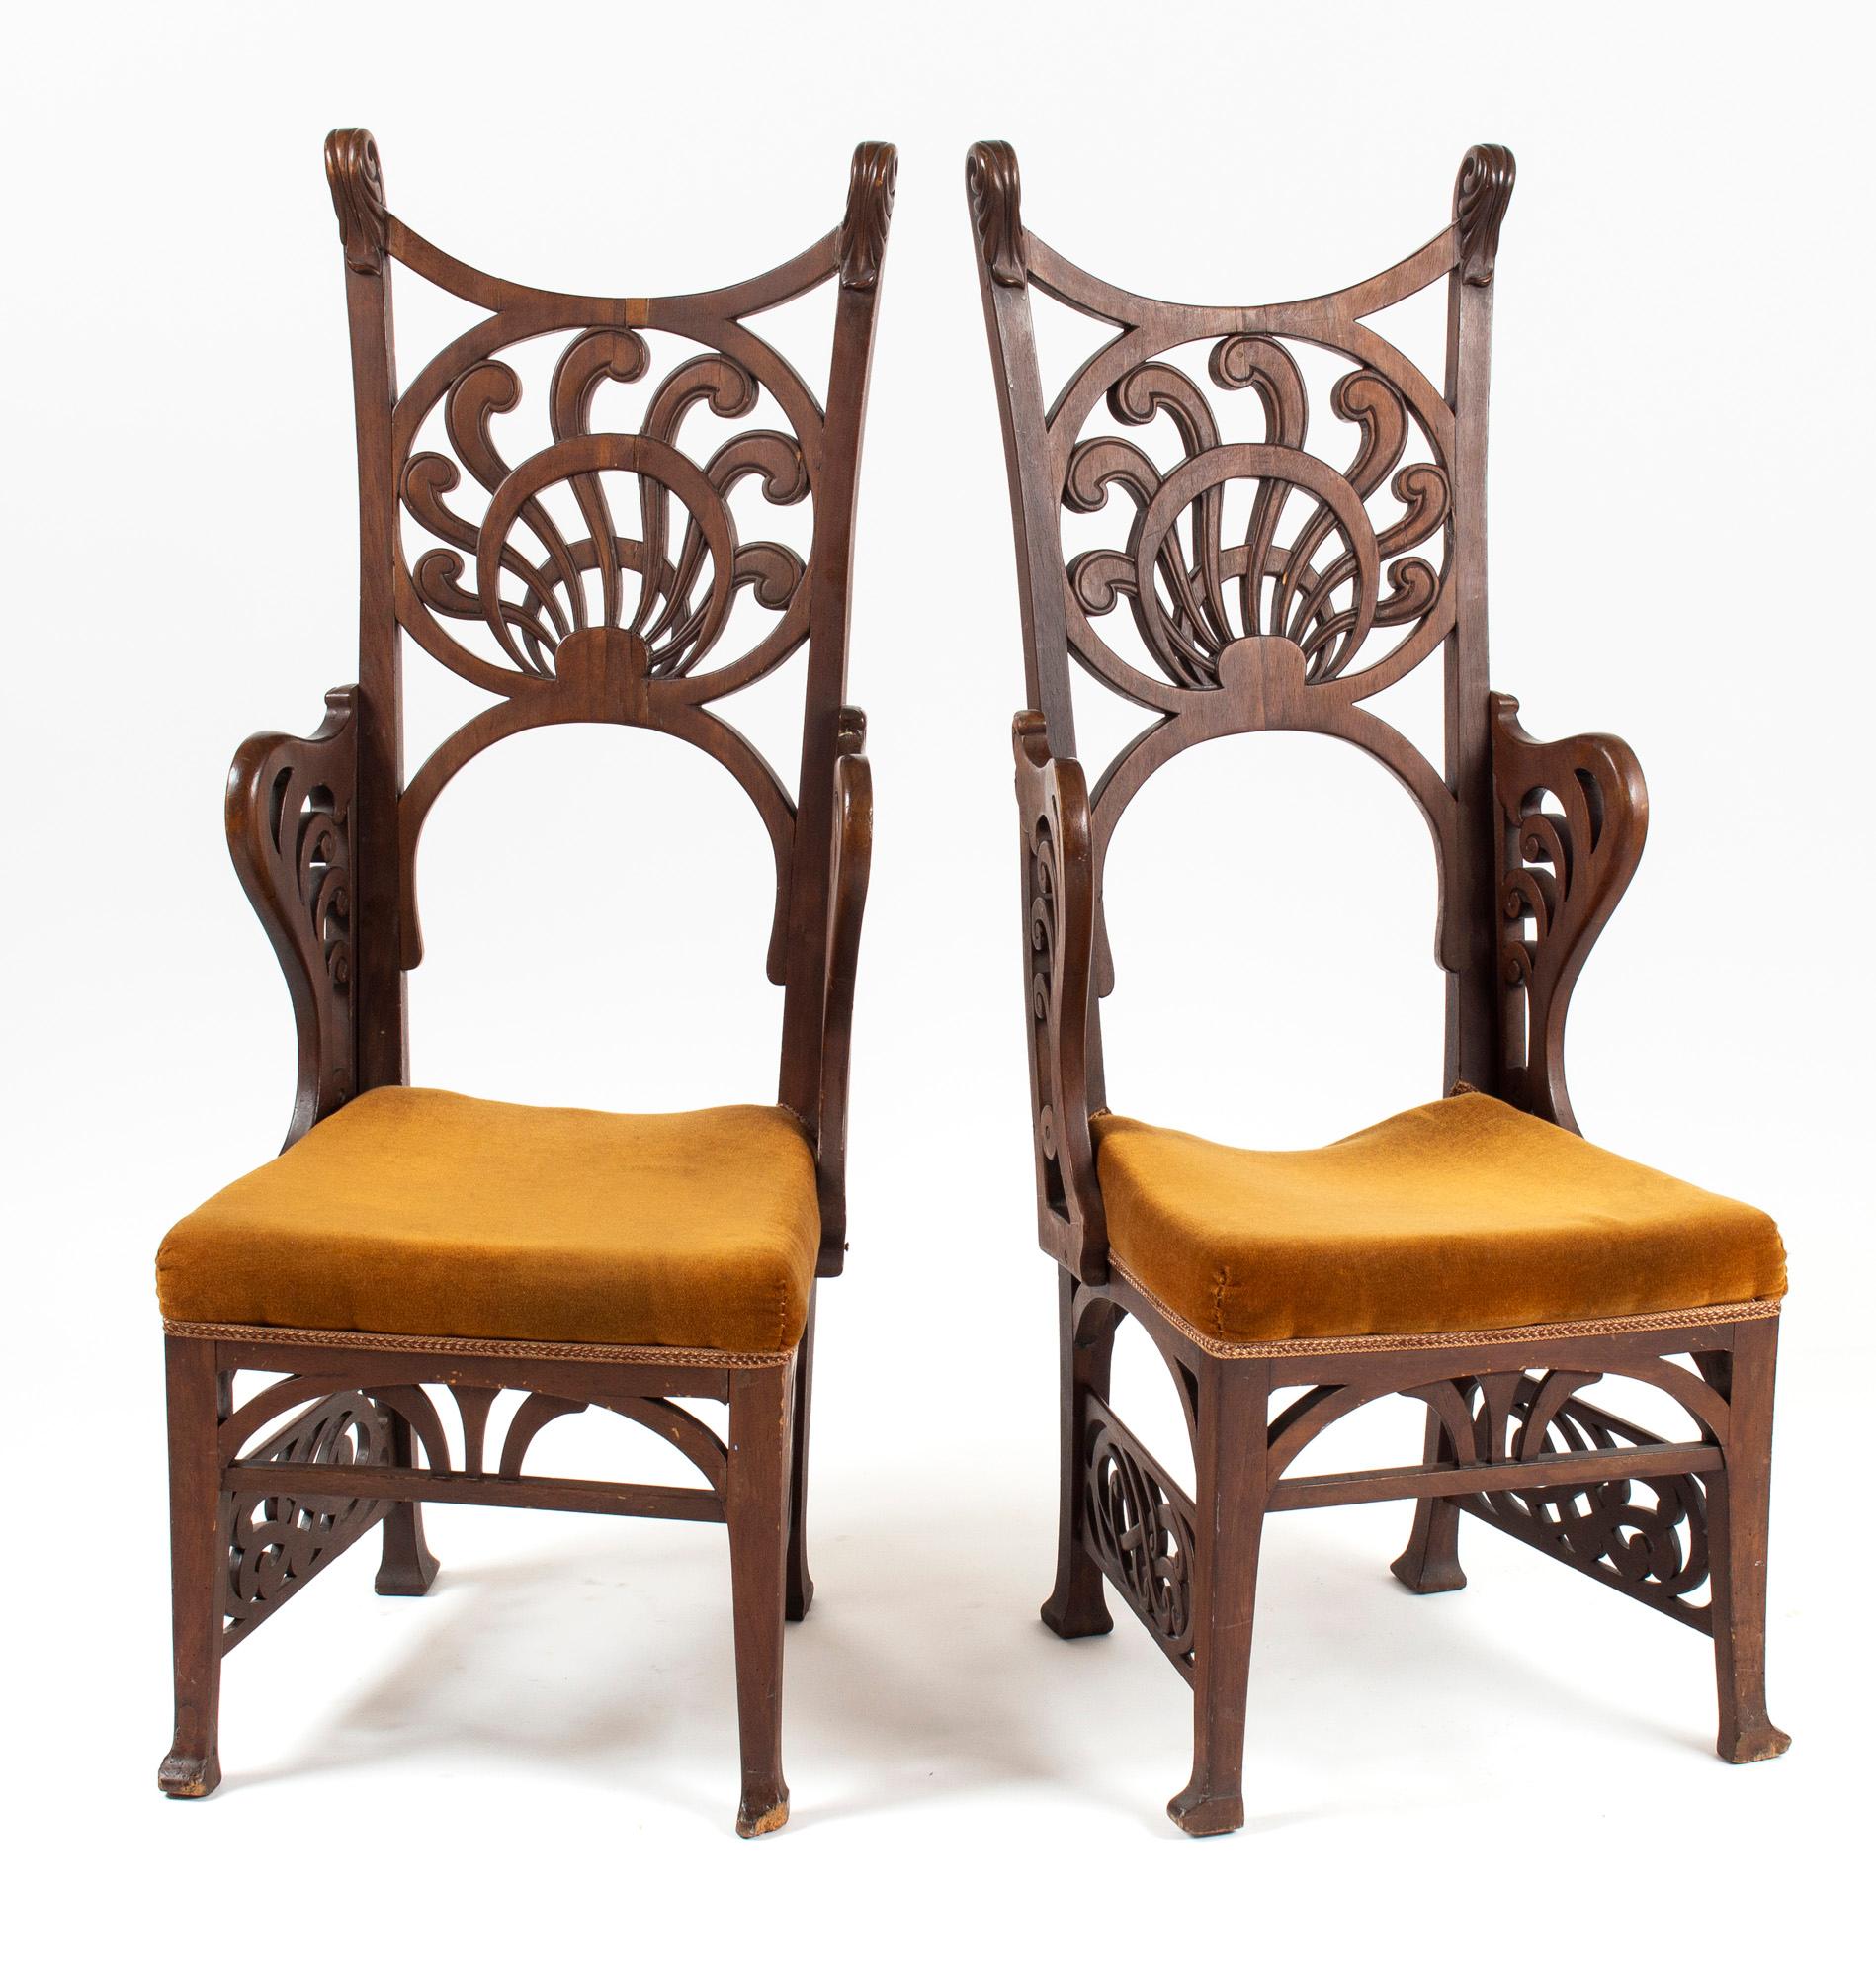 Vier einzigartige Stühle im Jugendstil mit geschnitztem Walnussdekor. Die geschnitzten Formen lassen die Stühle auf die künstlerischen Bewegungen um 1900 zurückgehen. Die langgestreckten und raffinierten Formen, die typisch für diese Zeit sind,